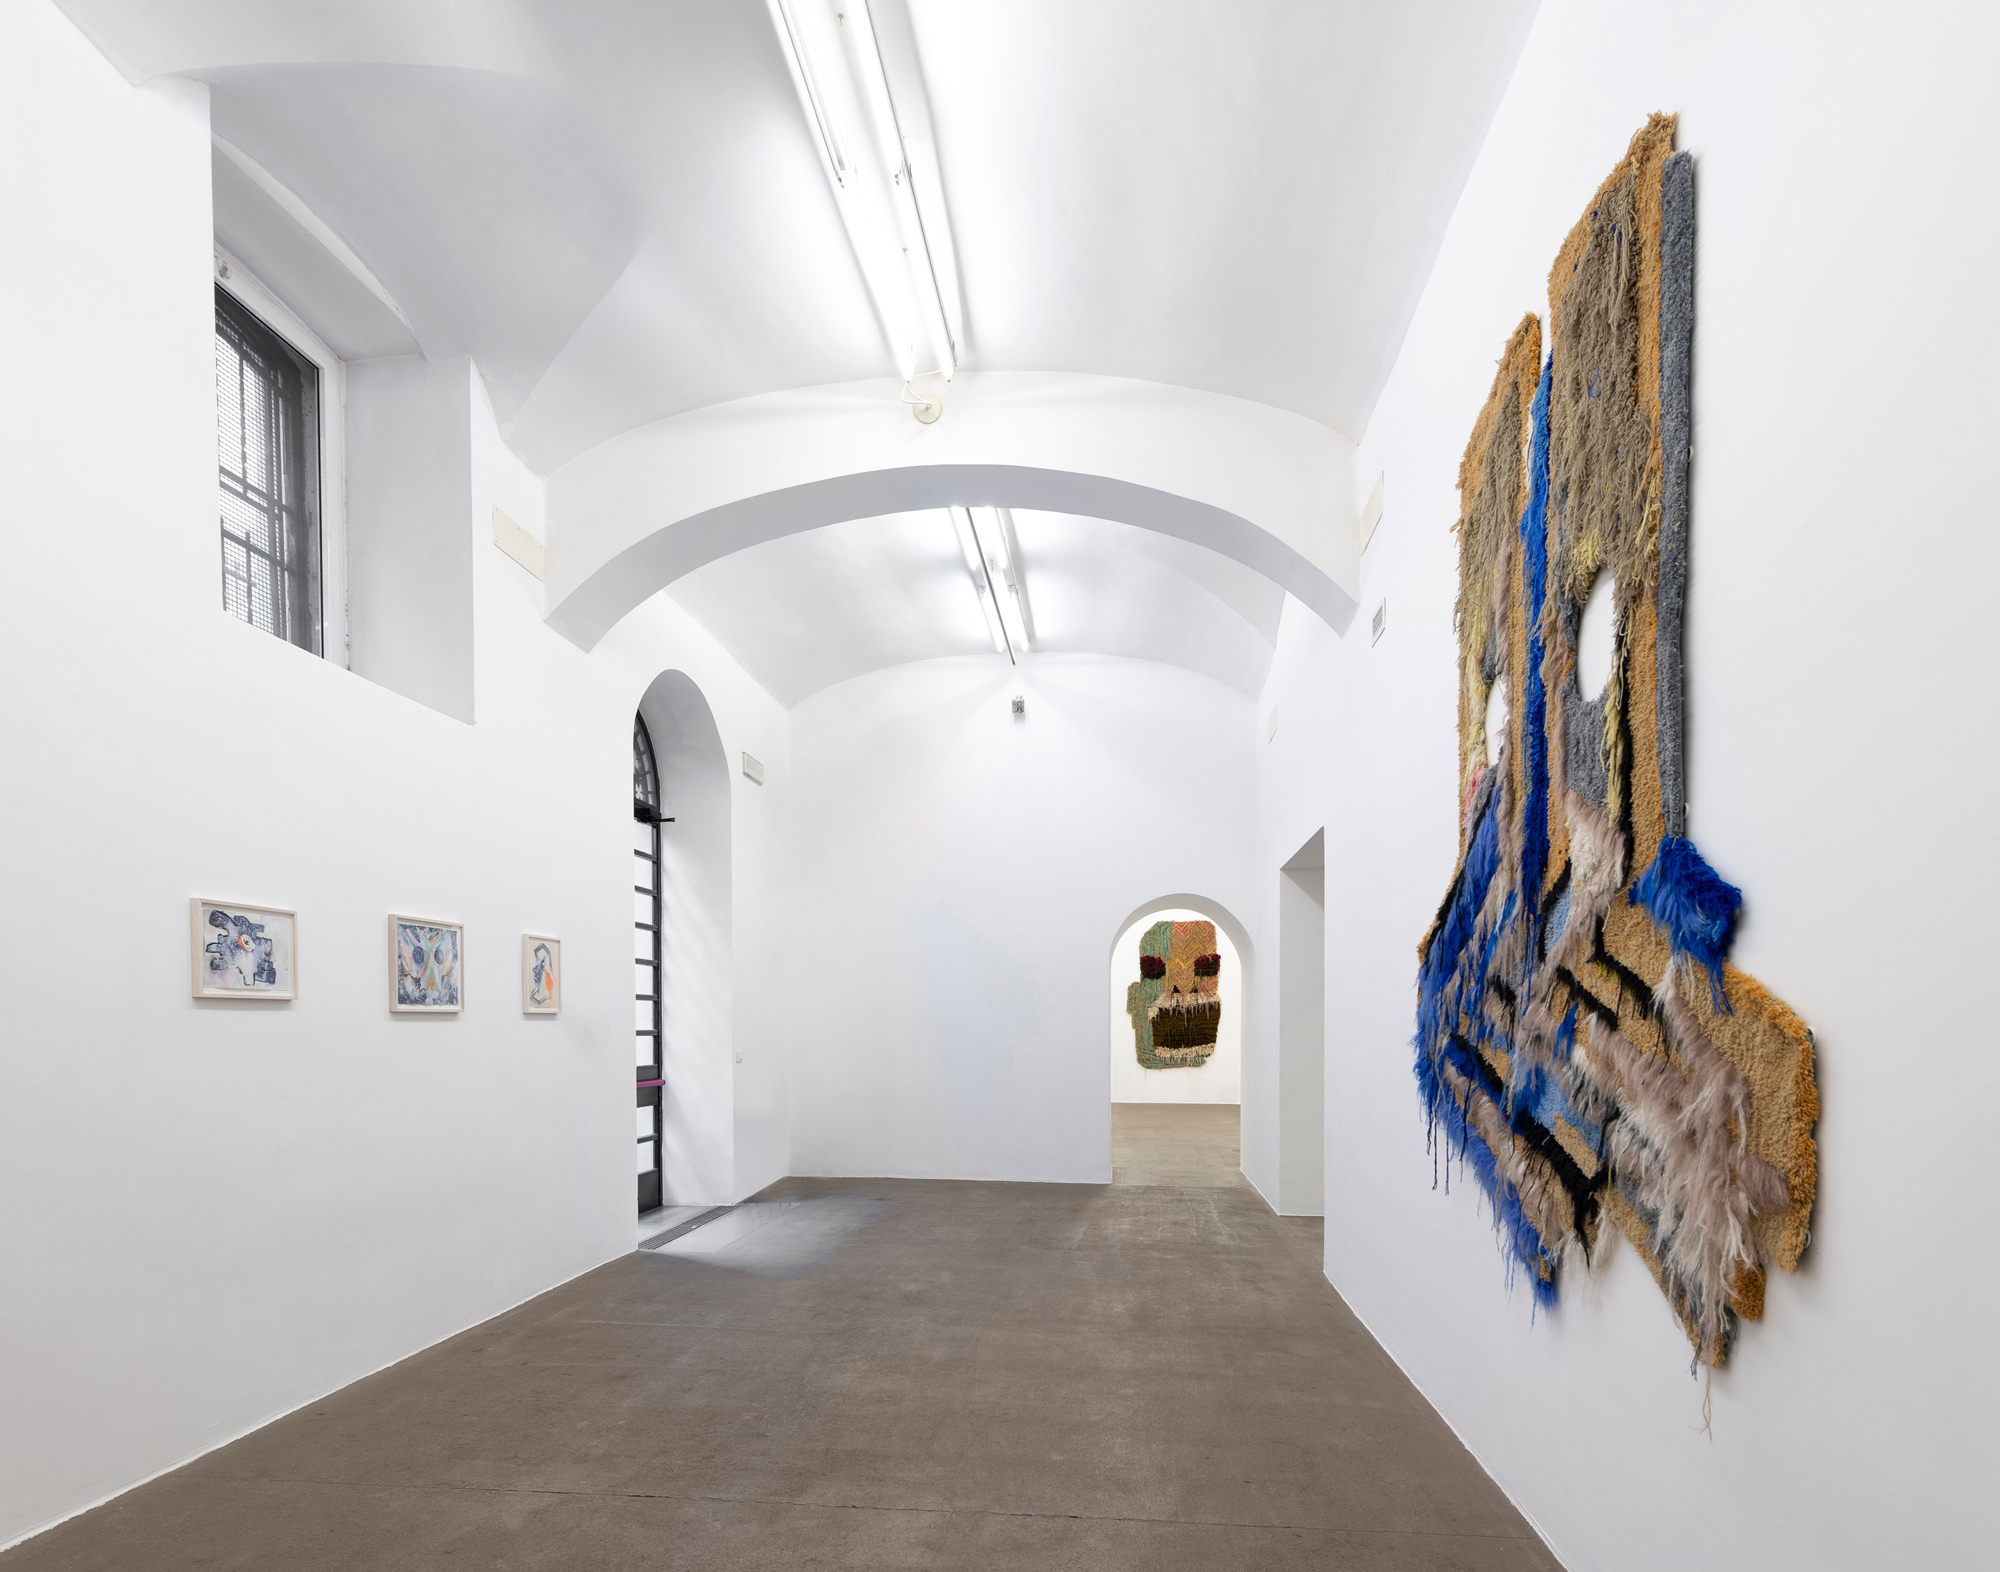 Caroline Achaintre, Permanente. Installation view at Fondazione Giuliani, photo by Giorgio Benni